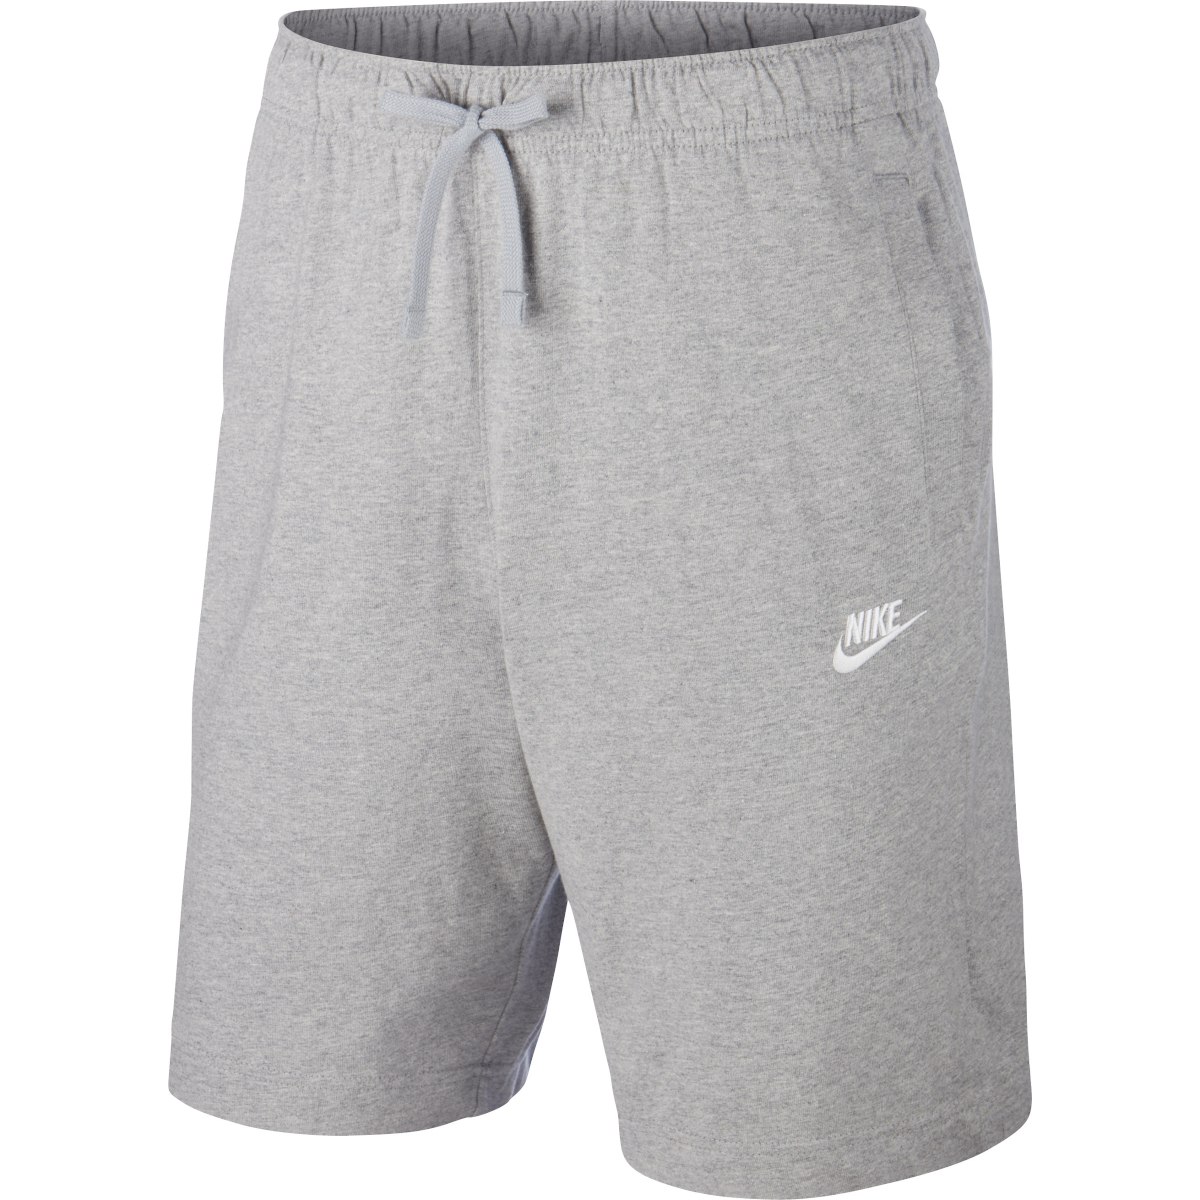 Produktbild von Nike Sportswear Club Herrenshorts - dark grey heather/white BV2772-063